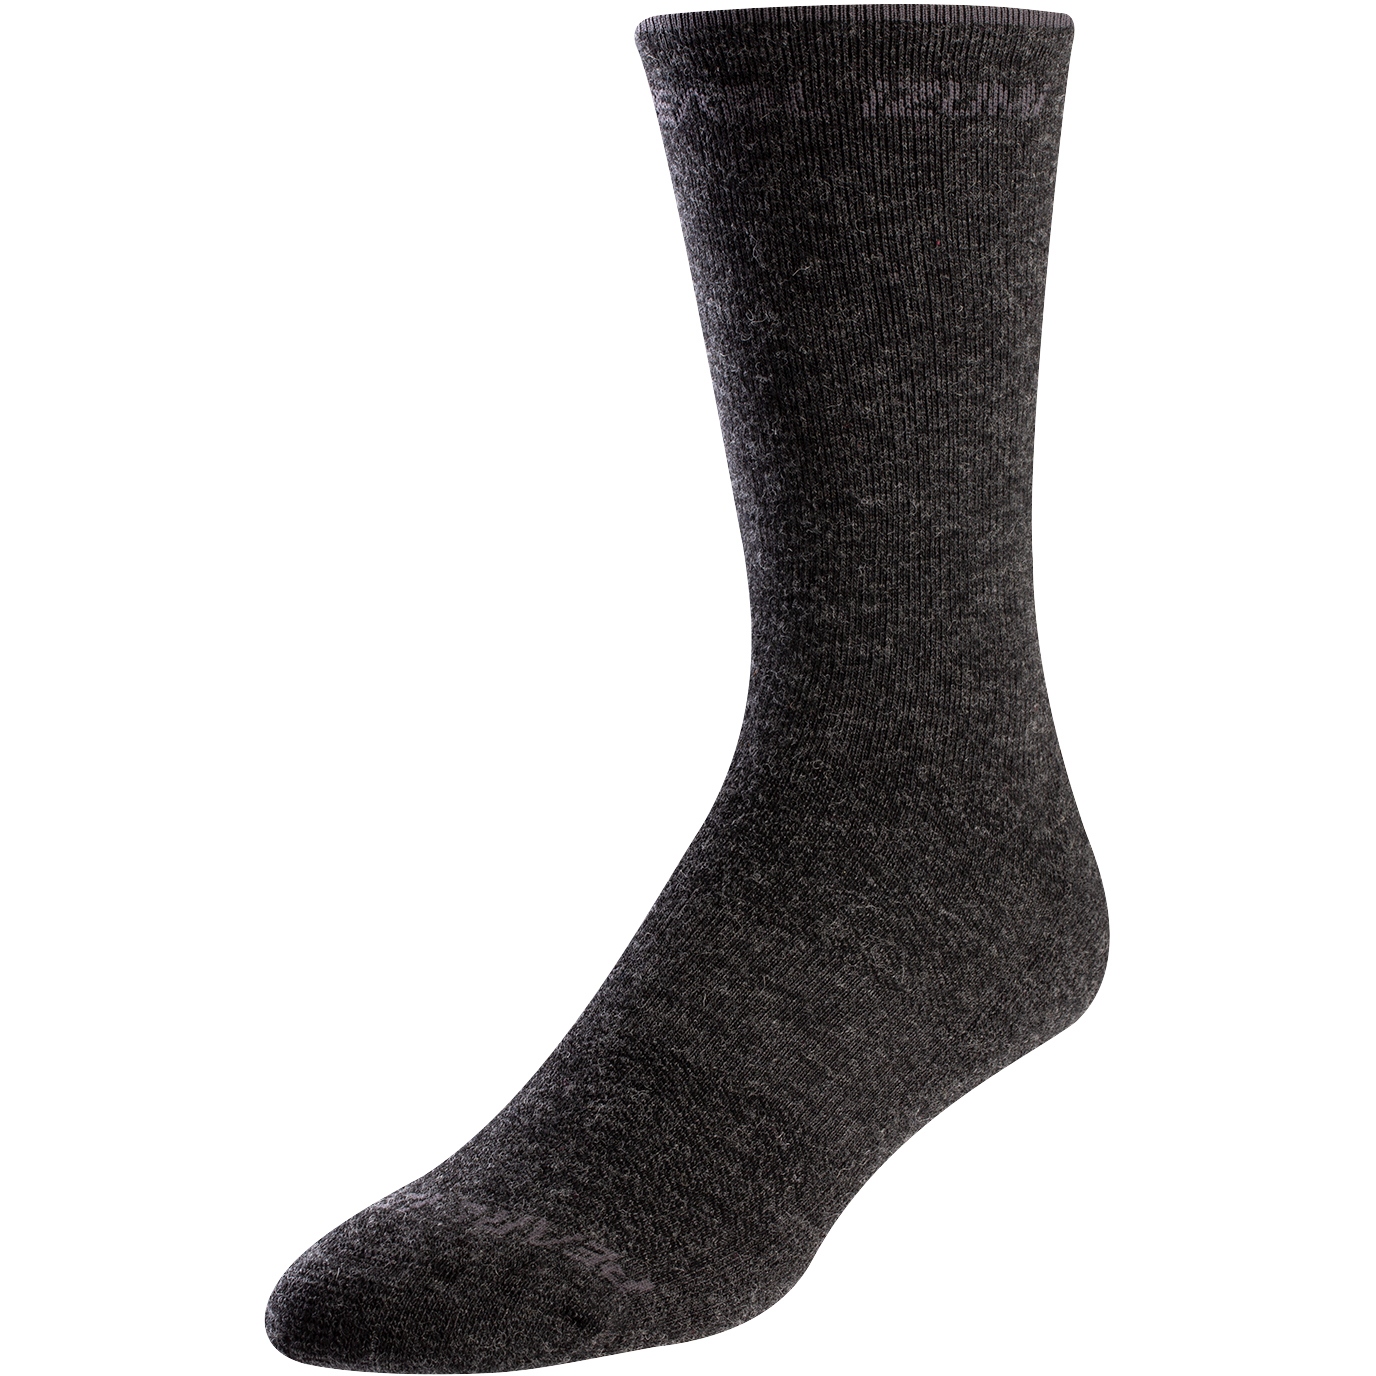 Bild von PEARL iZUMi Merino Thermal Wool Socken 14351901 - phantom core - 6PW